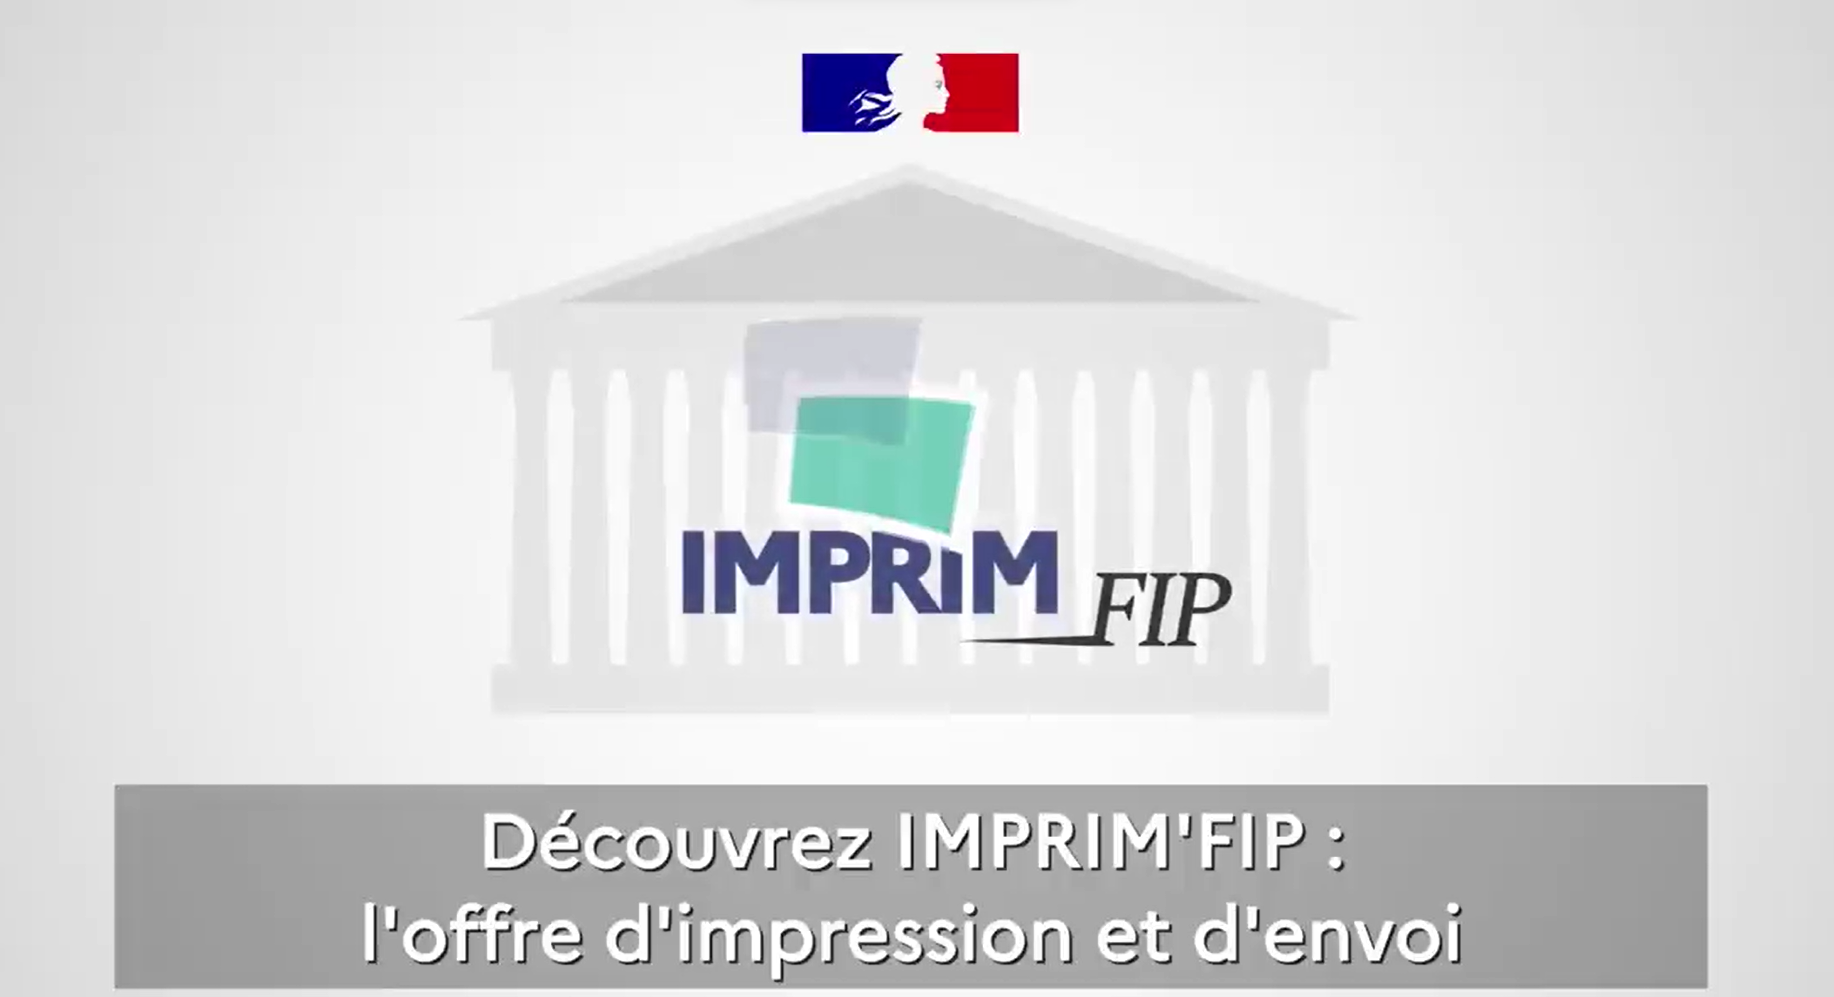 " IMPRIM’FIP "les capacités éditiques des Finances publiques accélérèrent leur mutualisation au service des autres administrations 